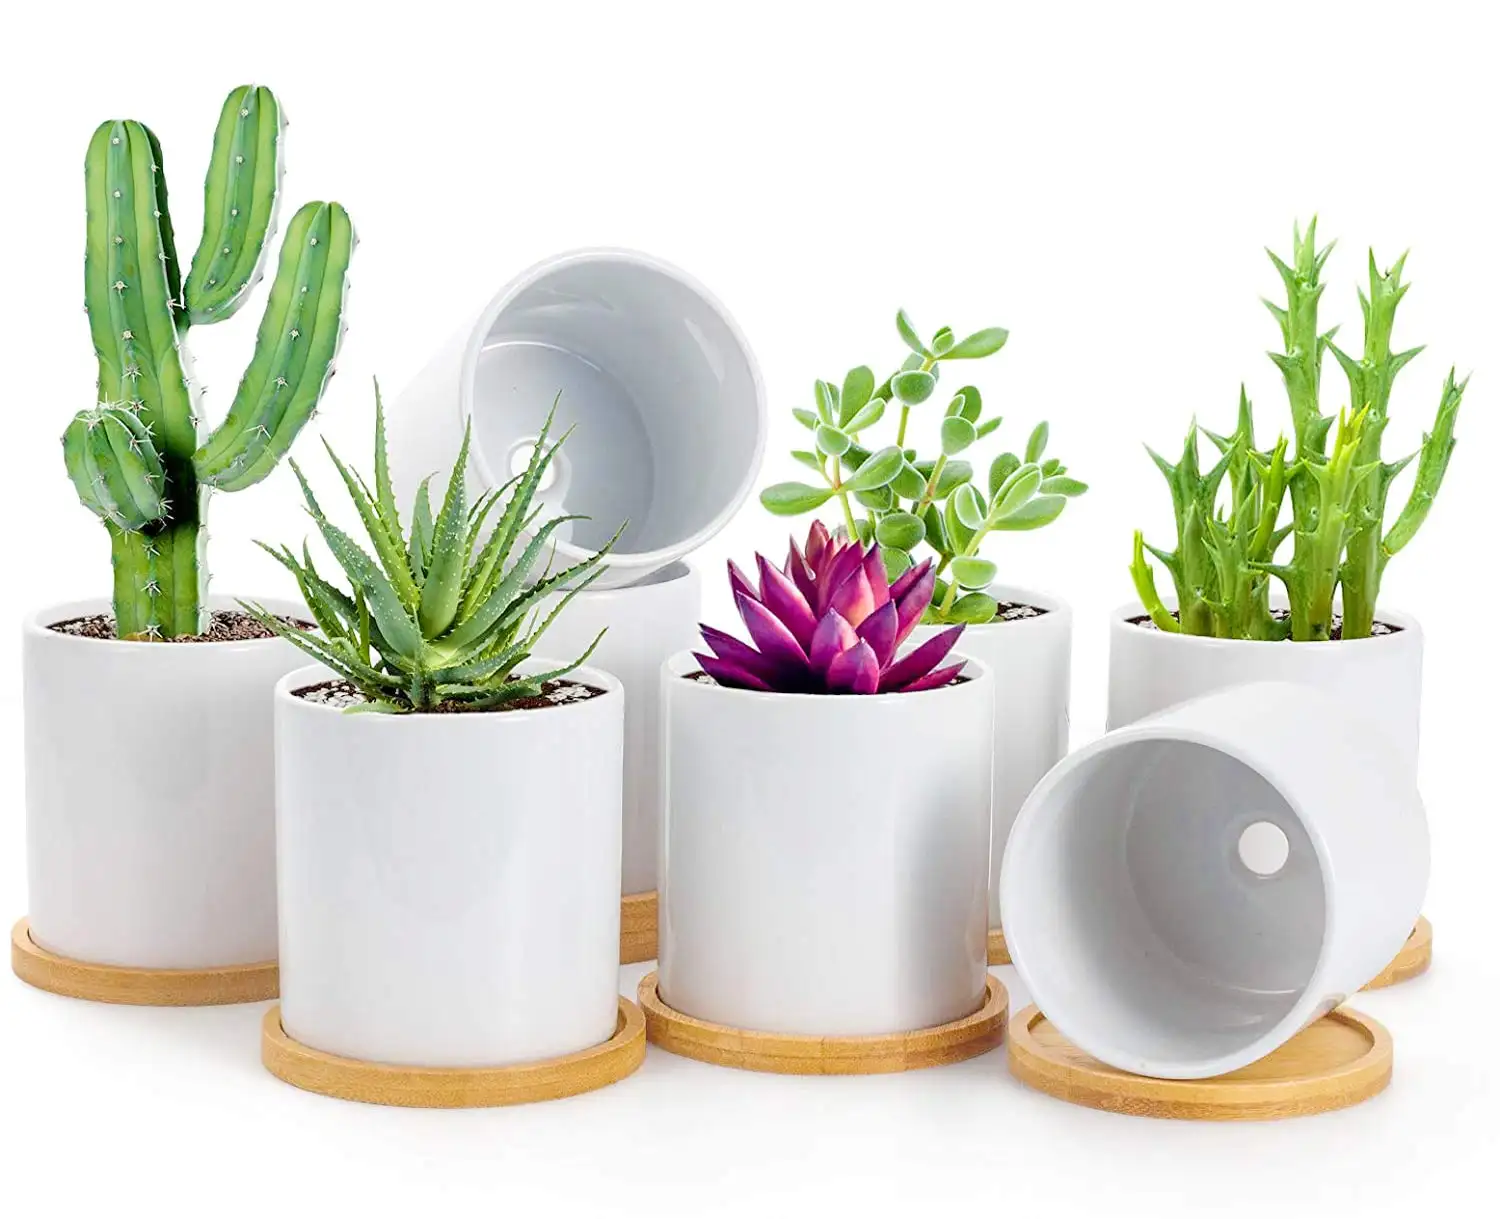 Weißer Keramik-Blumentopf mit Drainage loch und Bambus schale Kleine Kaktus-Pflanz gefäße für Home-Office-Dekor